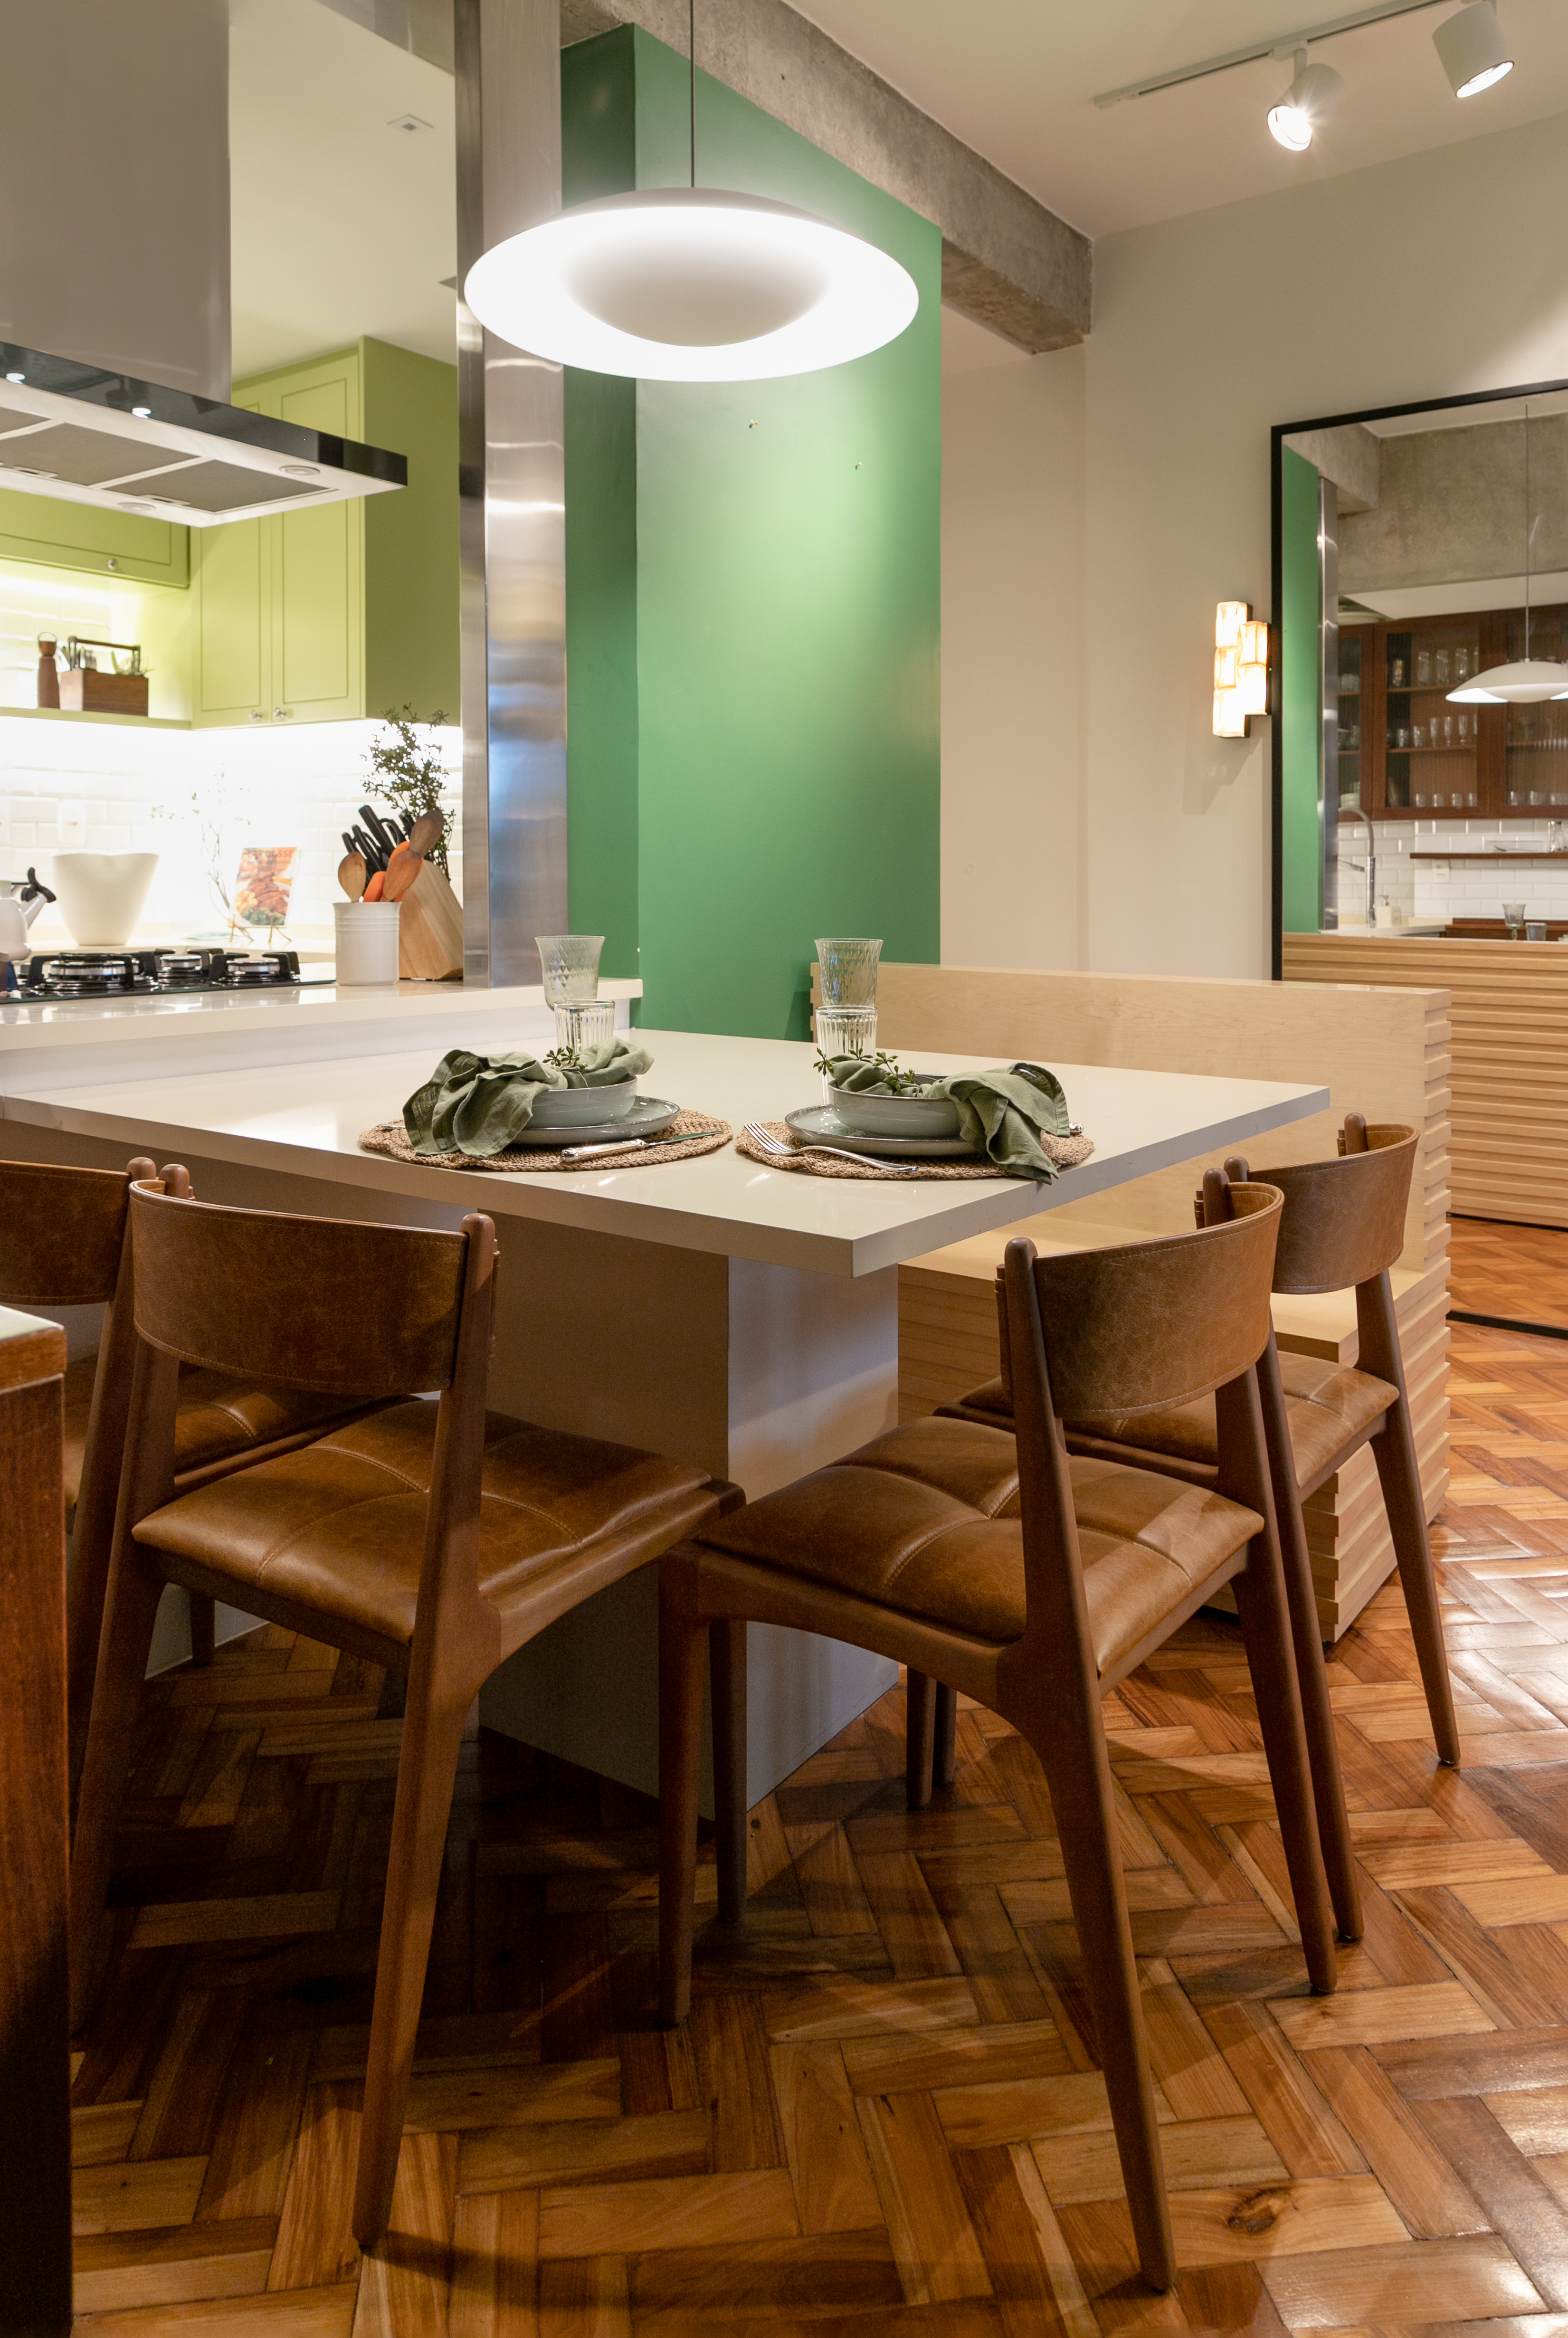 Projeto de Marcela Martins. Na foto, cozinha integrada com sala de jantar, parede verde e mesa de jantar branca.